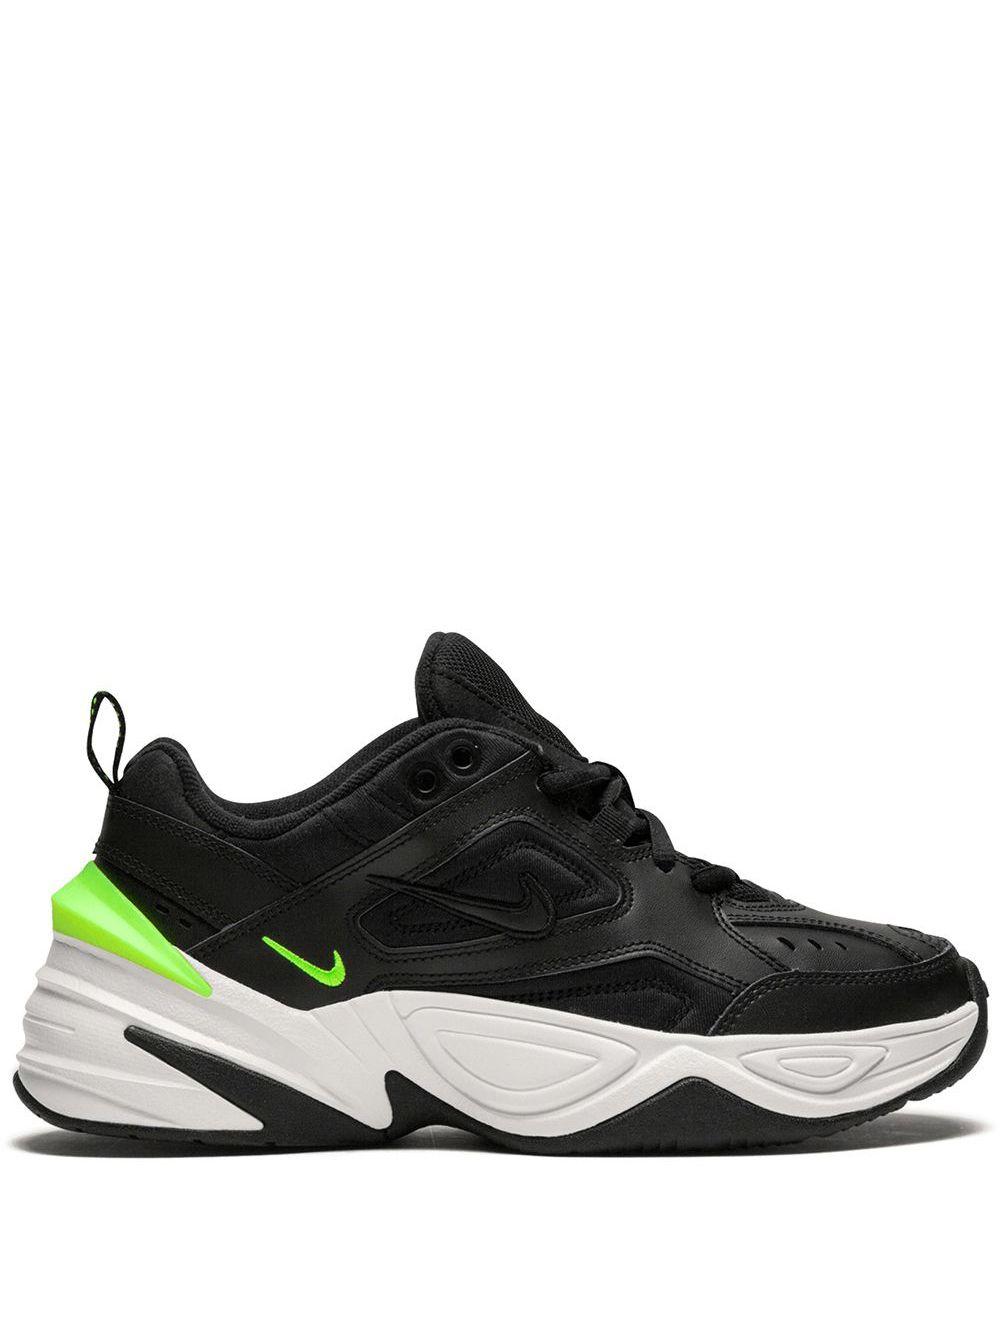 Nike M2k Tekno in Black - Save 69% | Lyst Australia